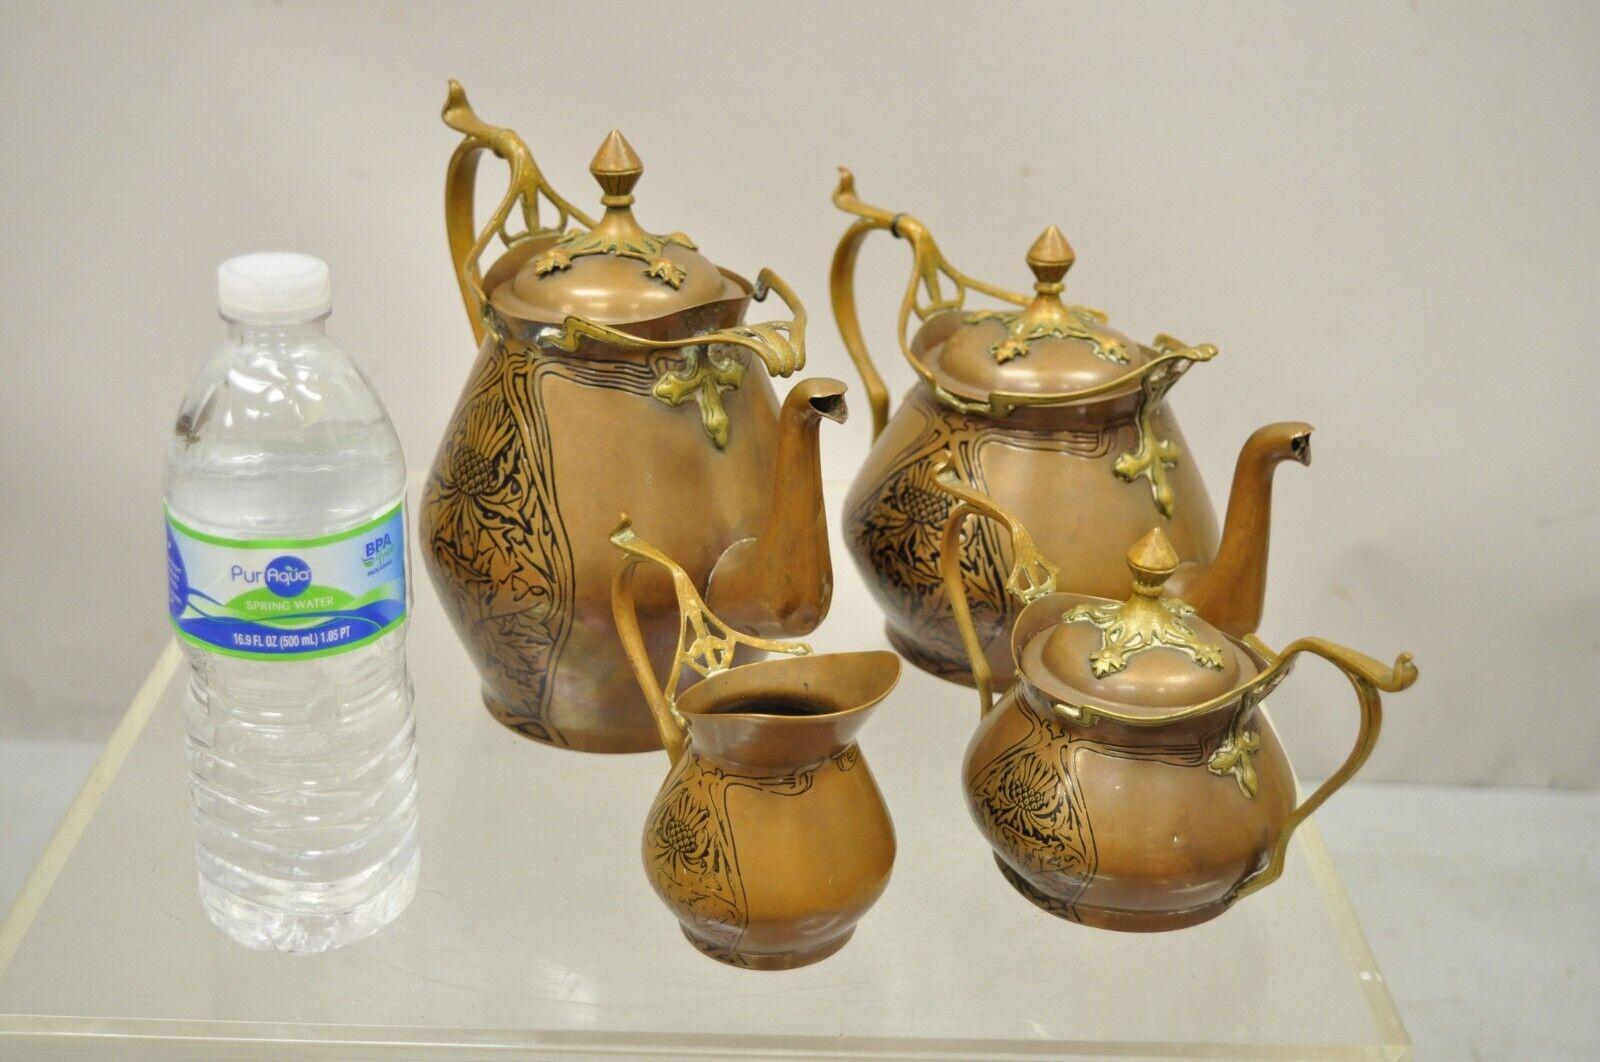 Carl Deffner Copper German Art Nouveau Thistle tea set - 4 pc Set. Circa 19th Century.
Measurements: 
Tea Pot: 6.25